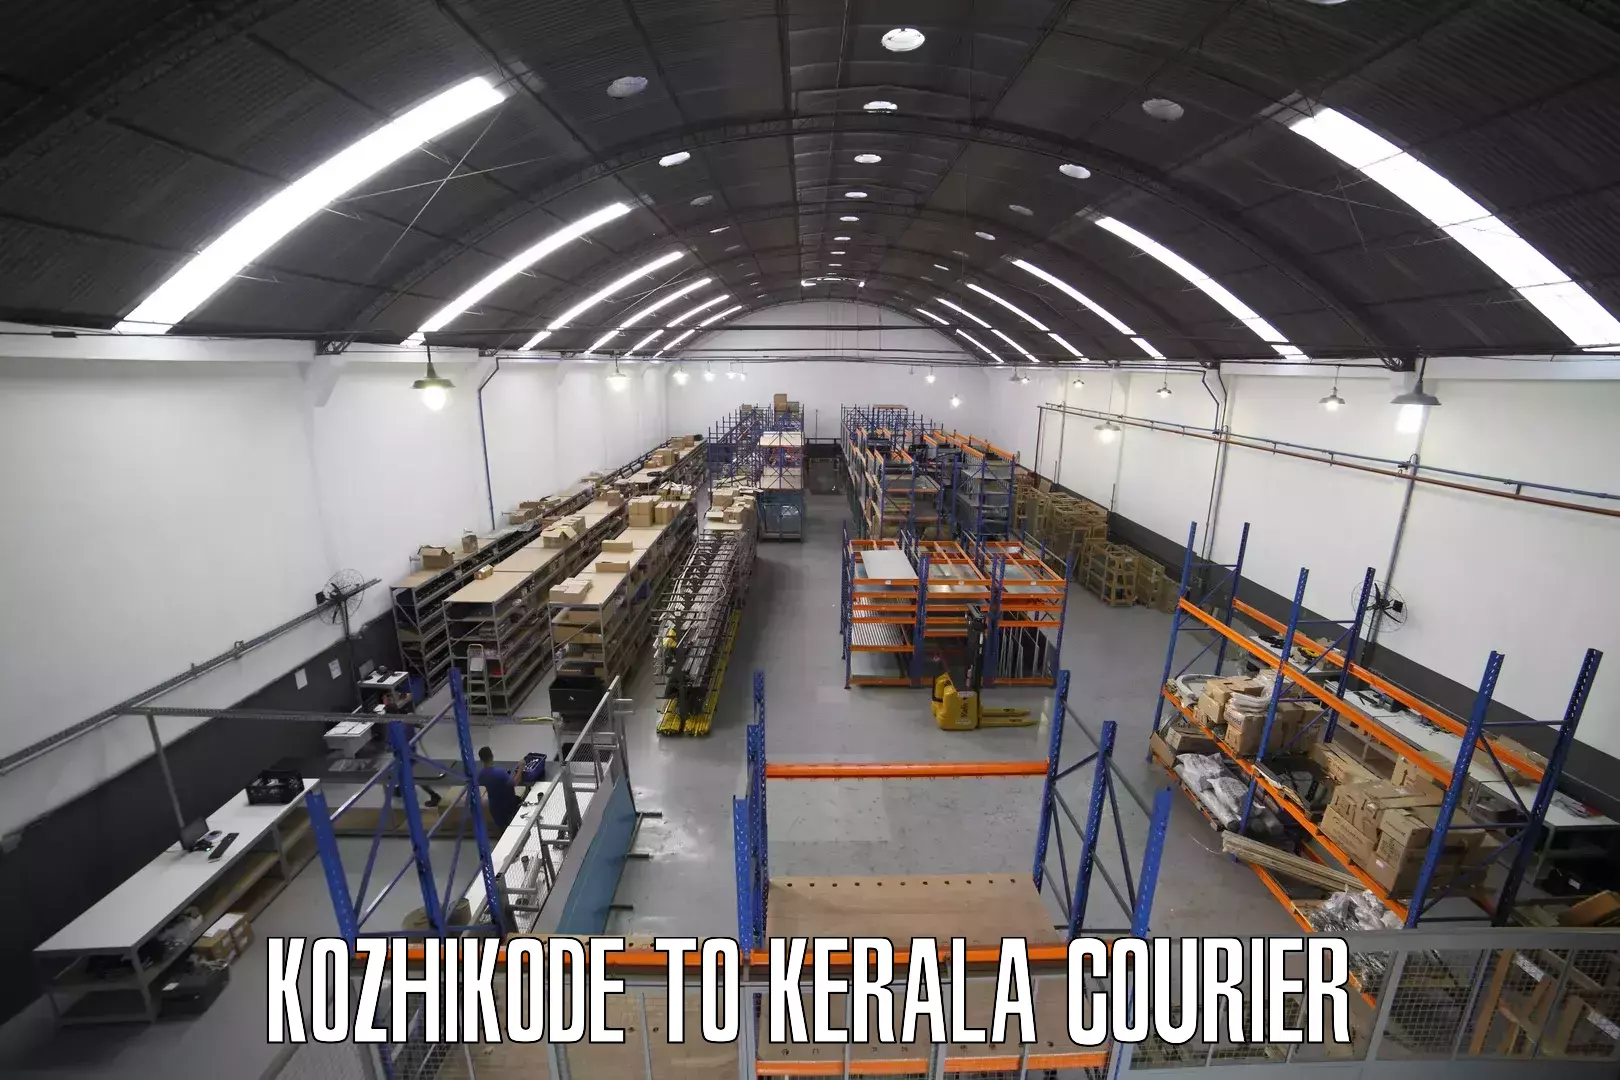 On-demand delivery Kozhikode to Koothattukulam